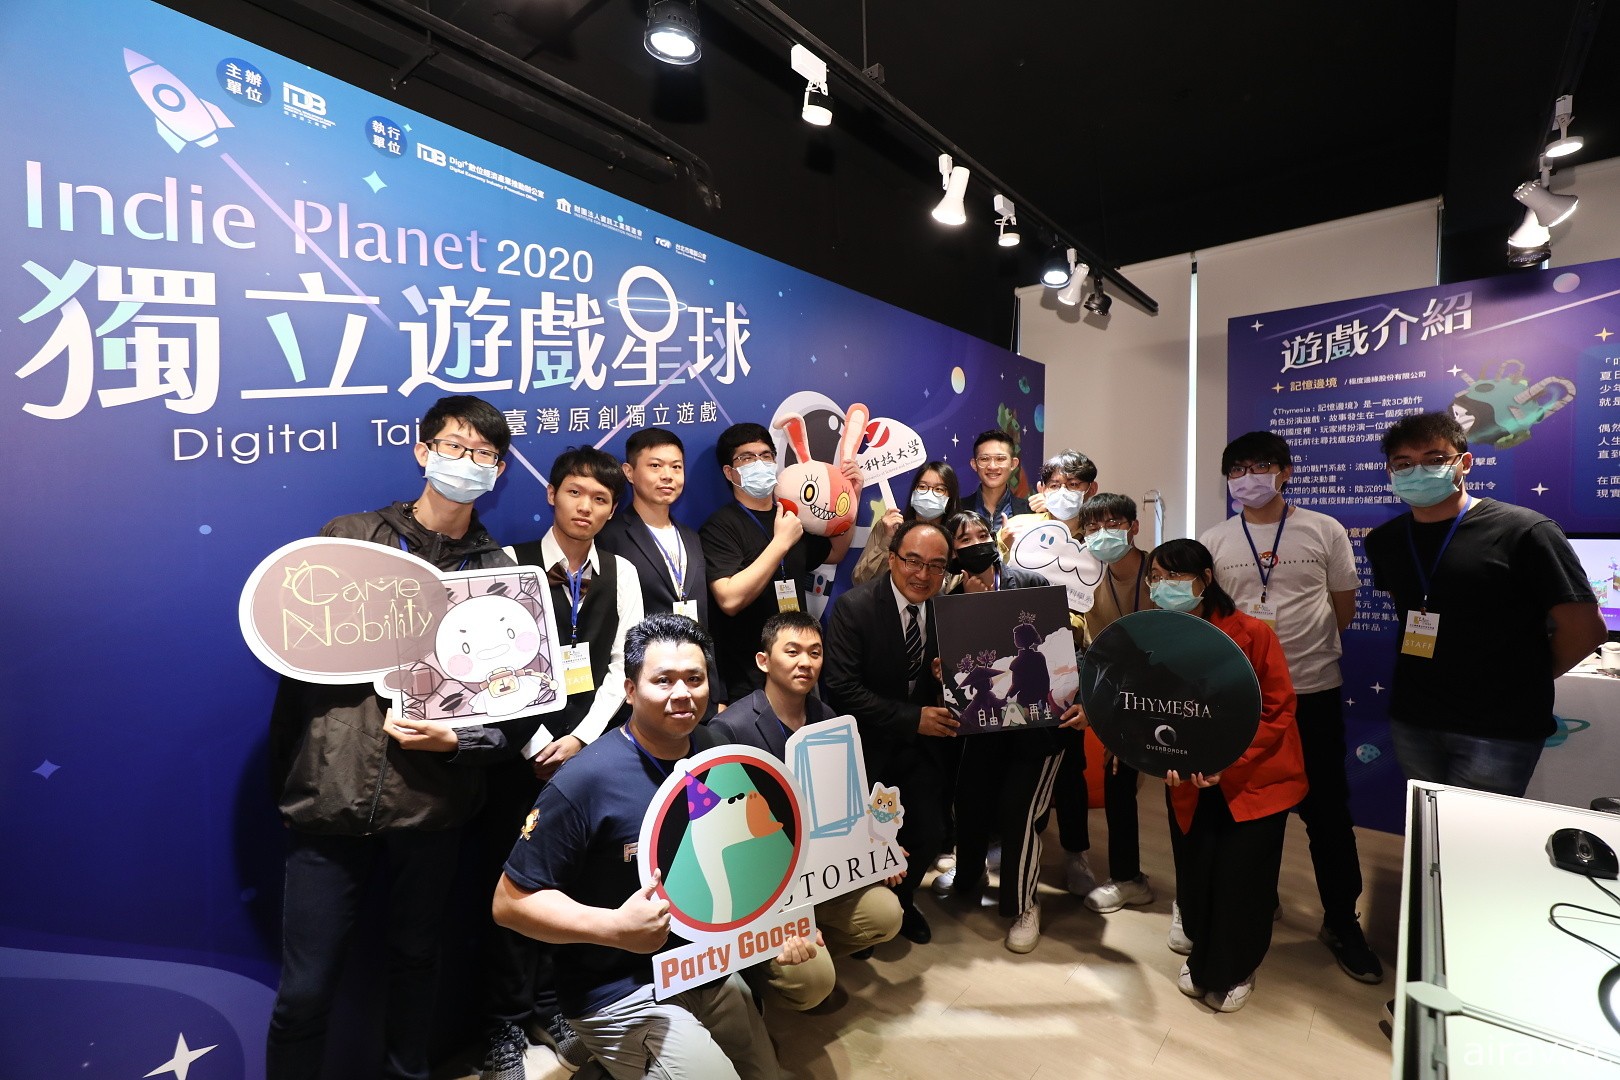 Digital Taipei 打造「Indie Planet 星球」獨立遊戲展區 《我滿懷歧異的意識代碼》等現場亮相